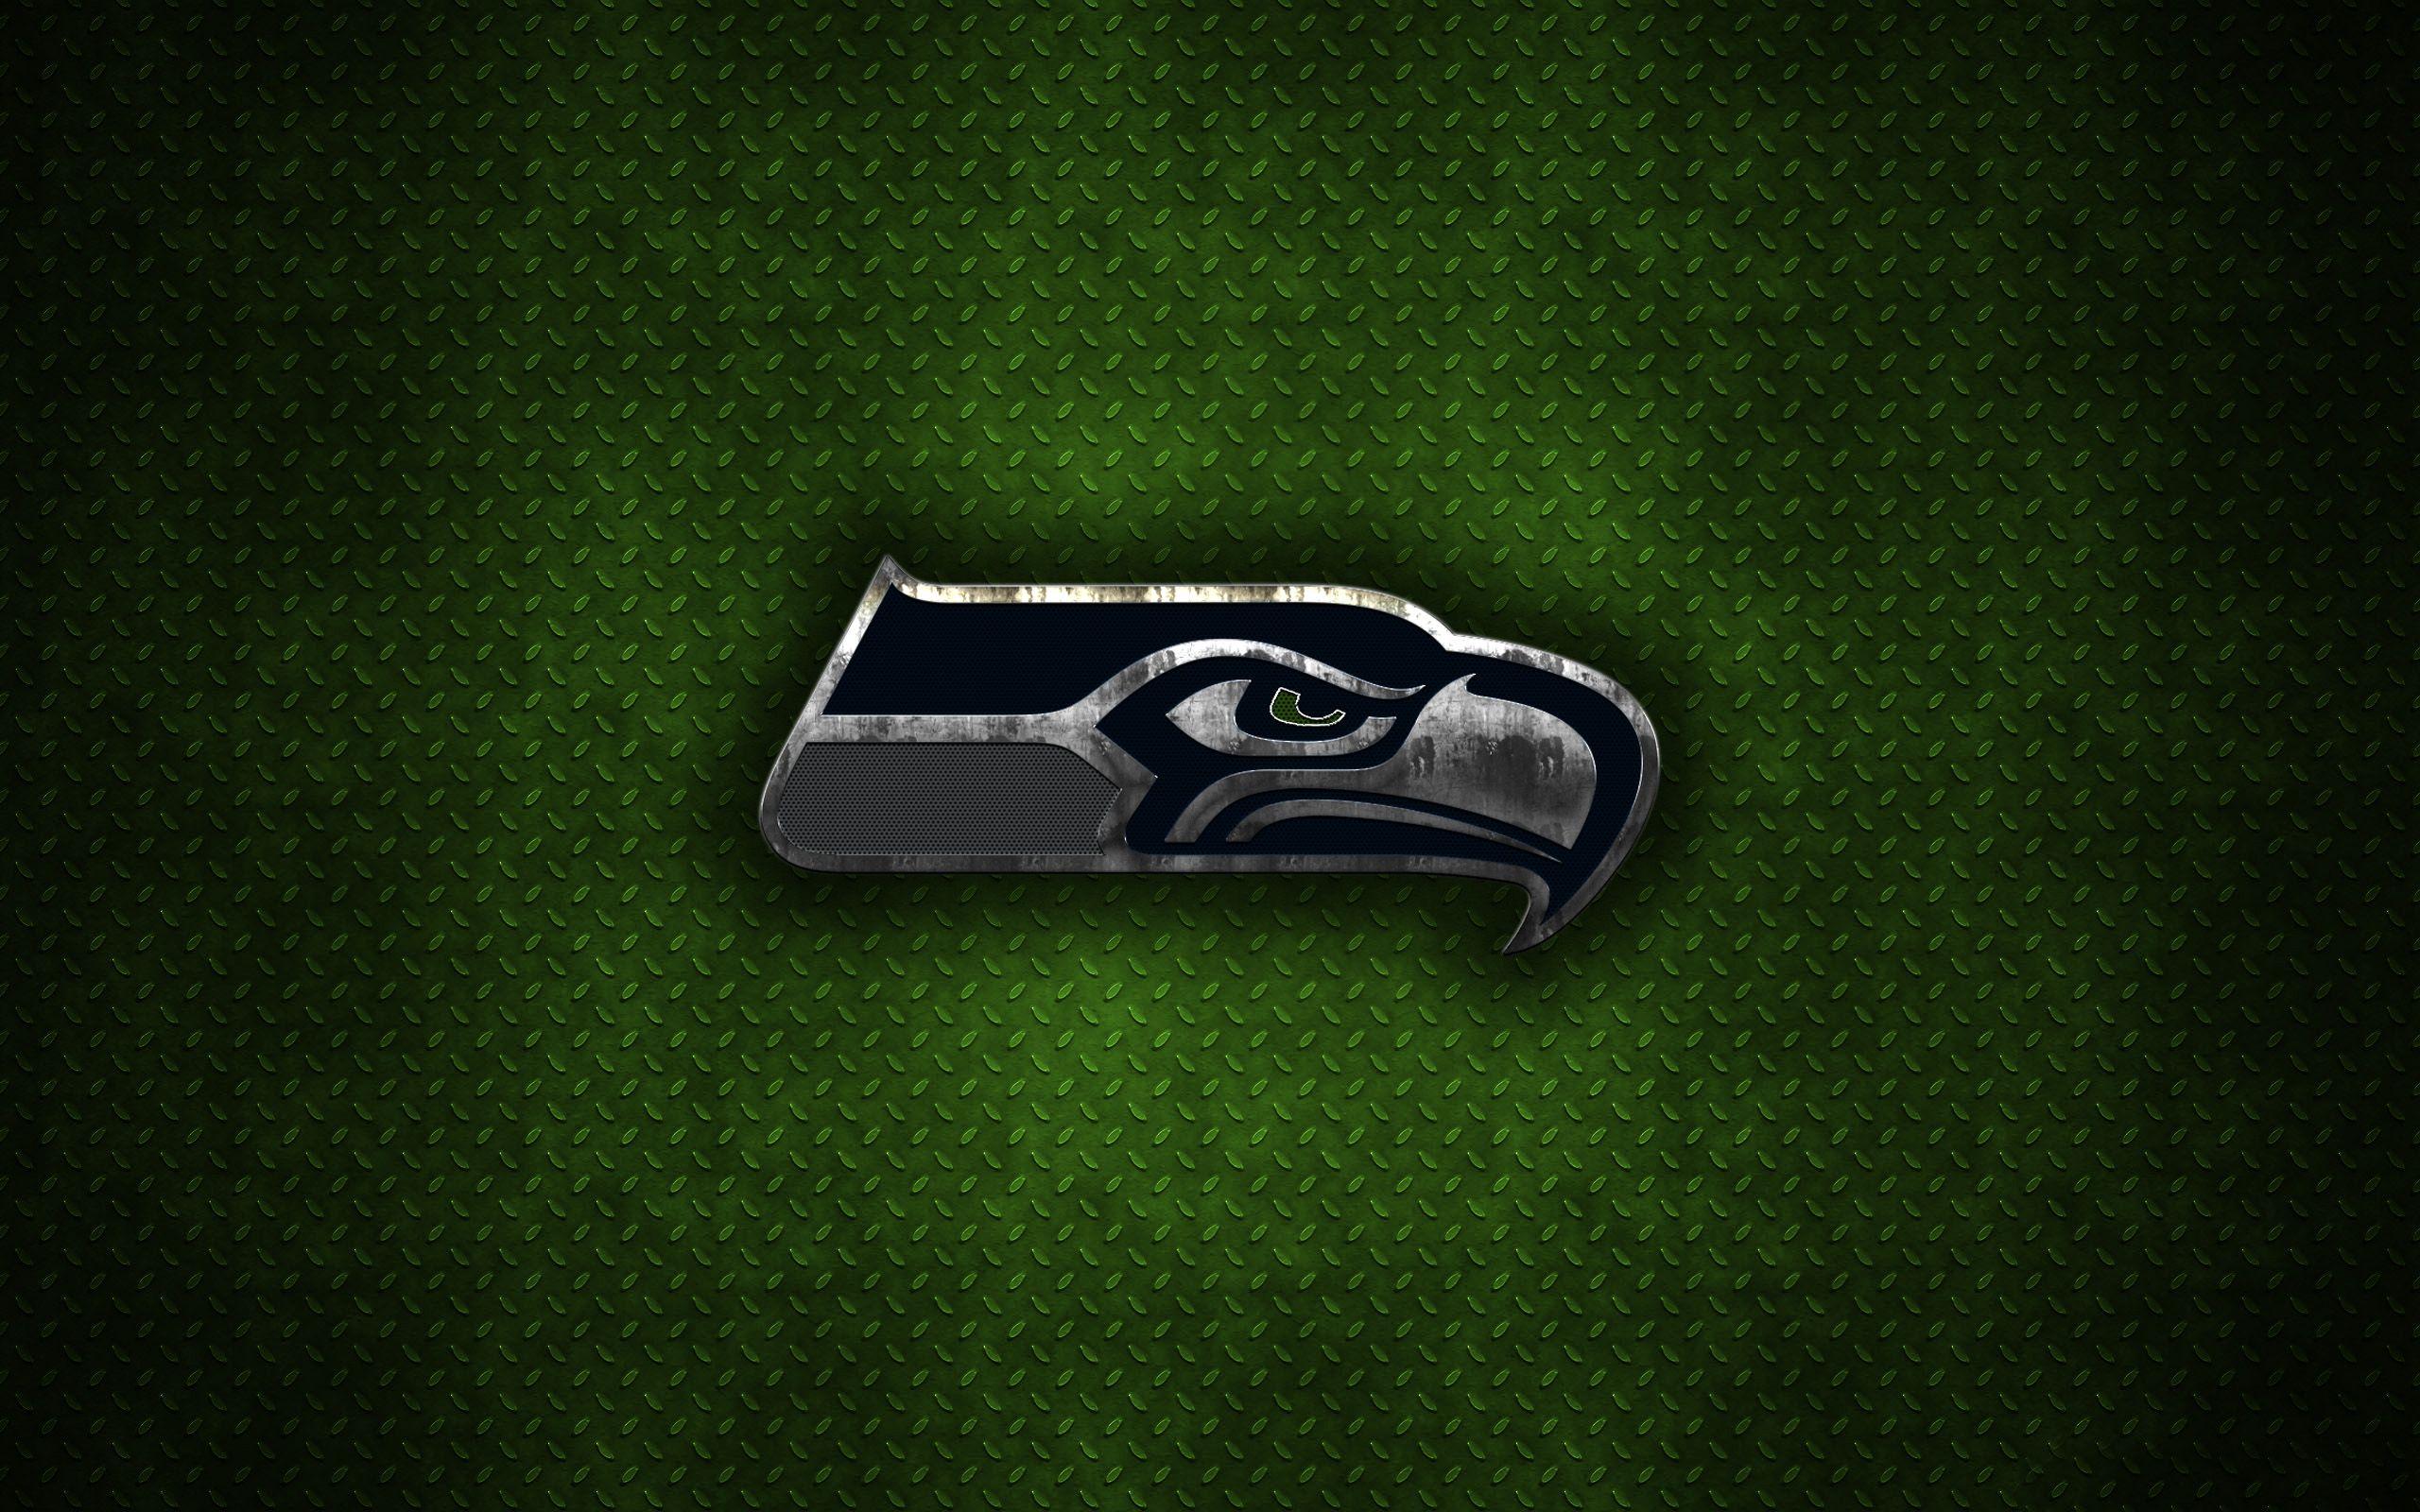 2560x1600 hình nền logo seahawks 2013